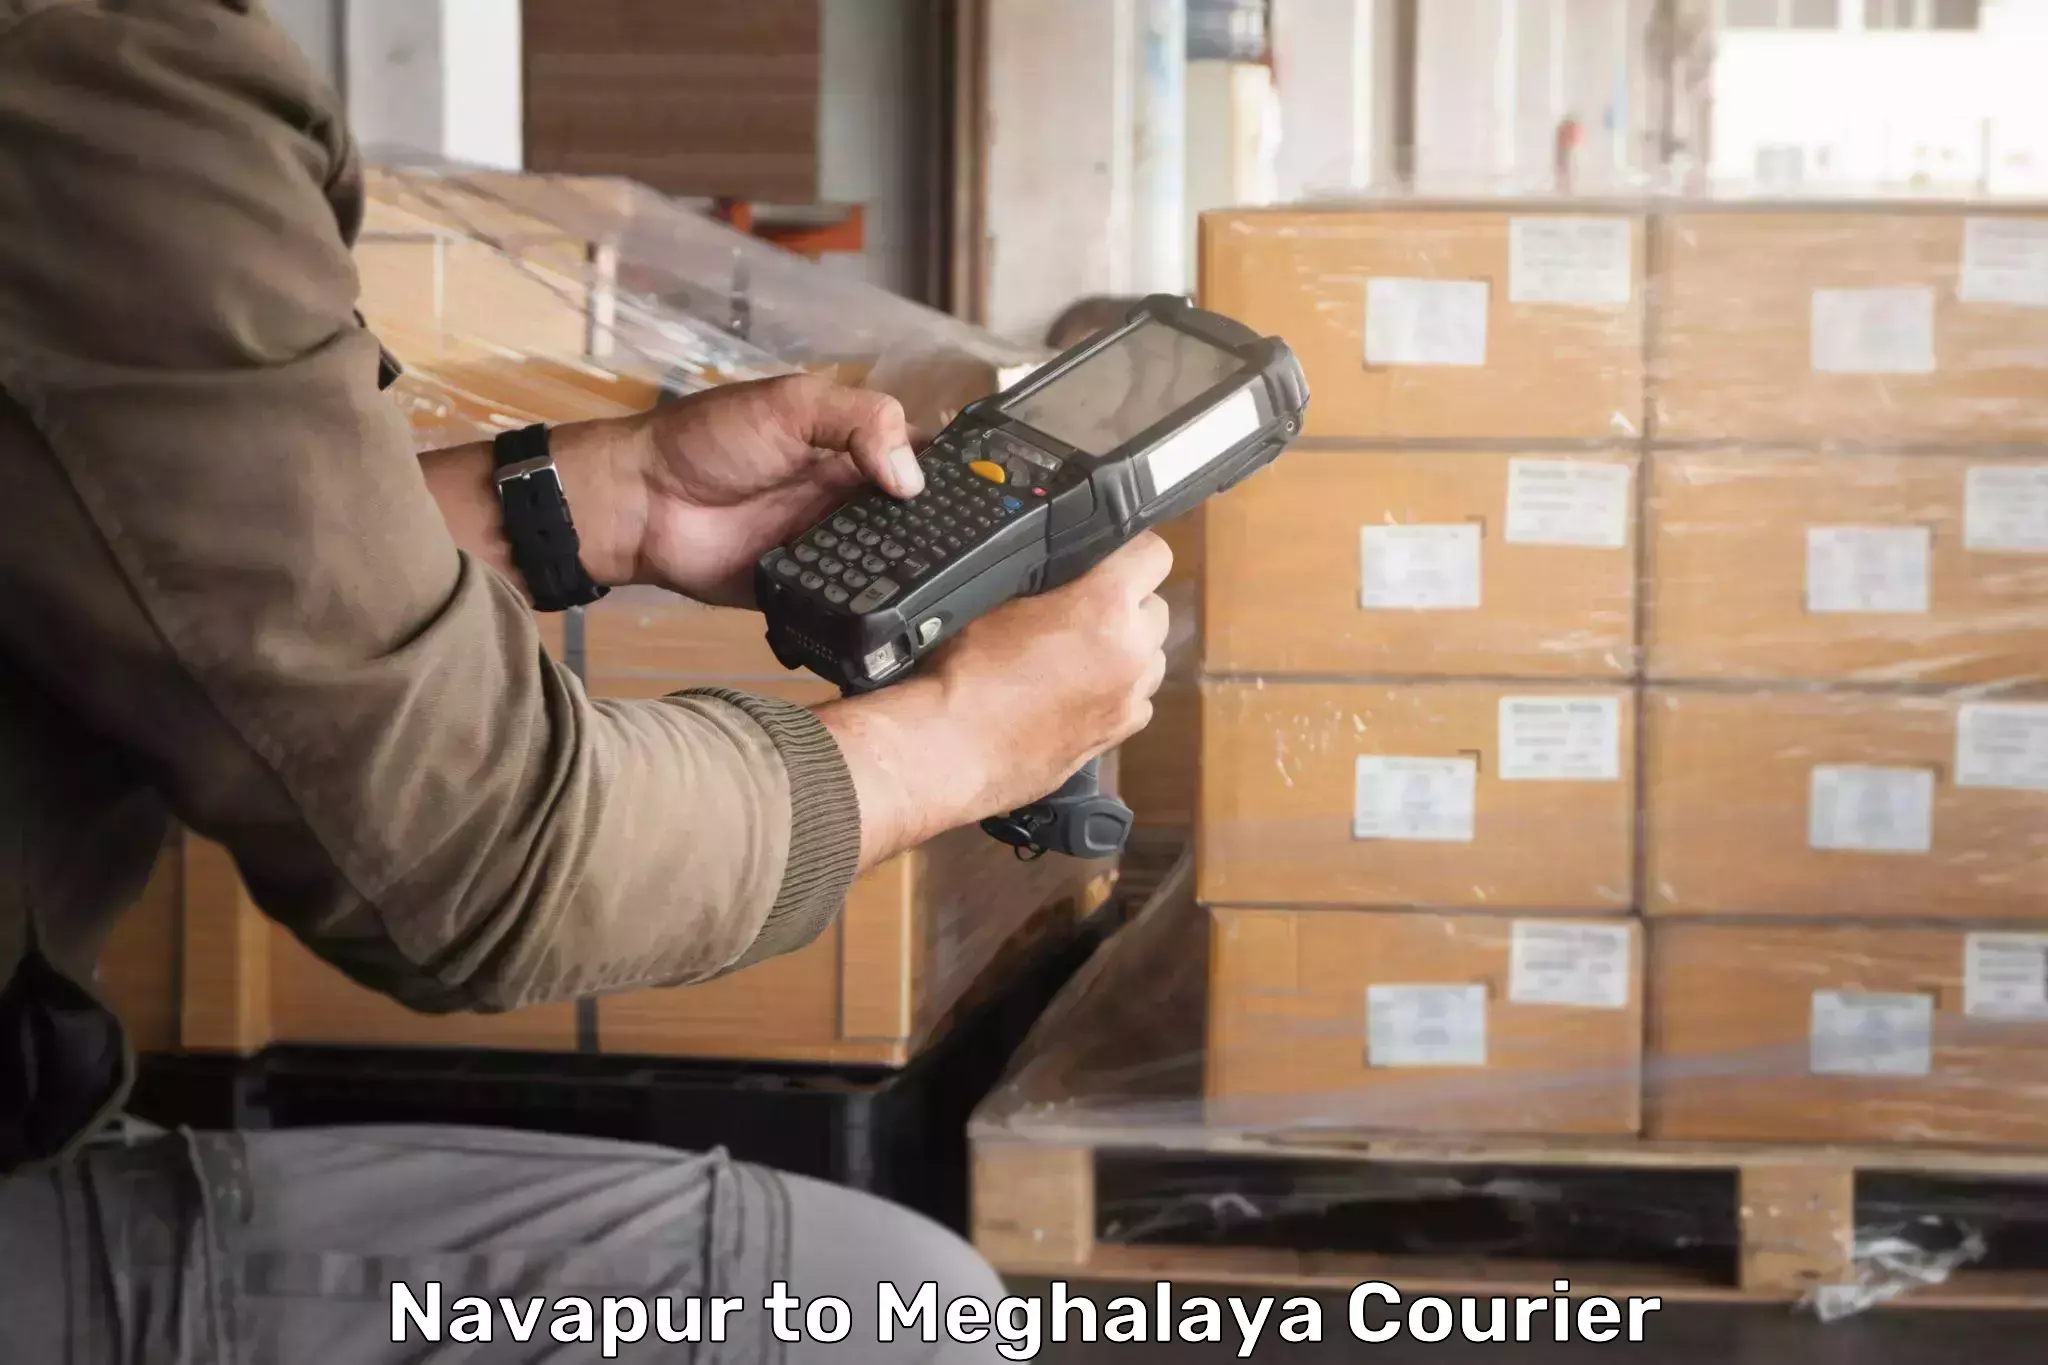 Weekend courier service Navapur to Cherrapunji